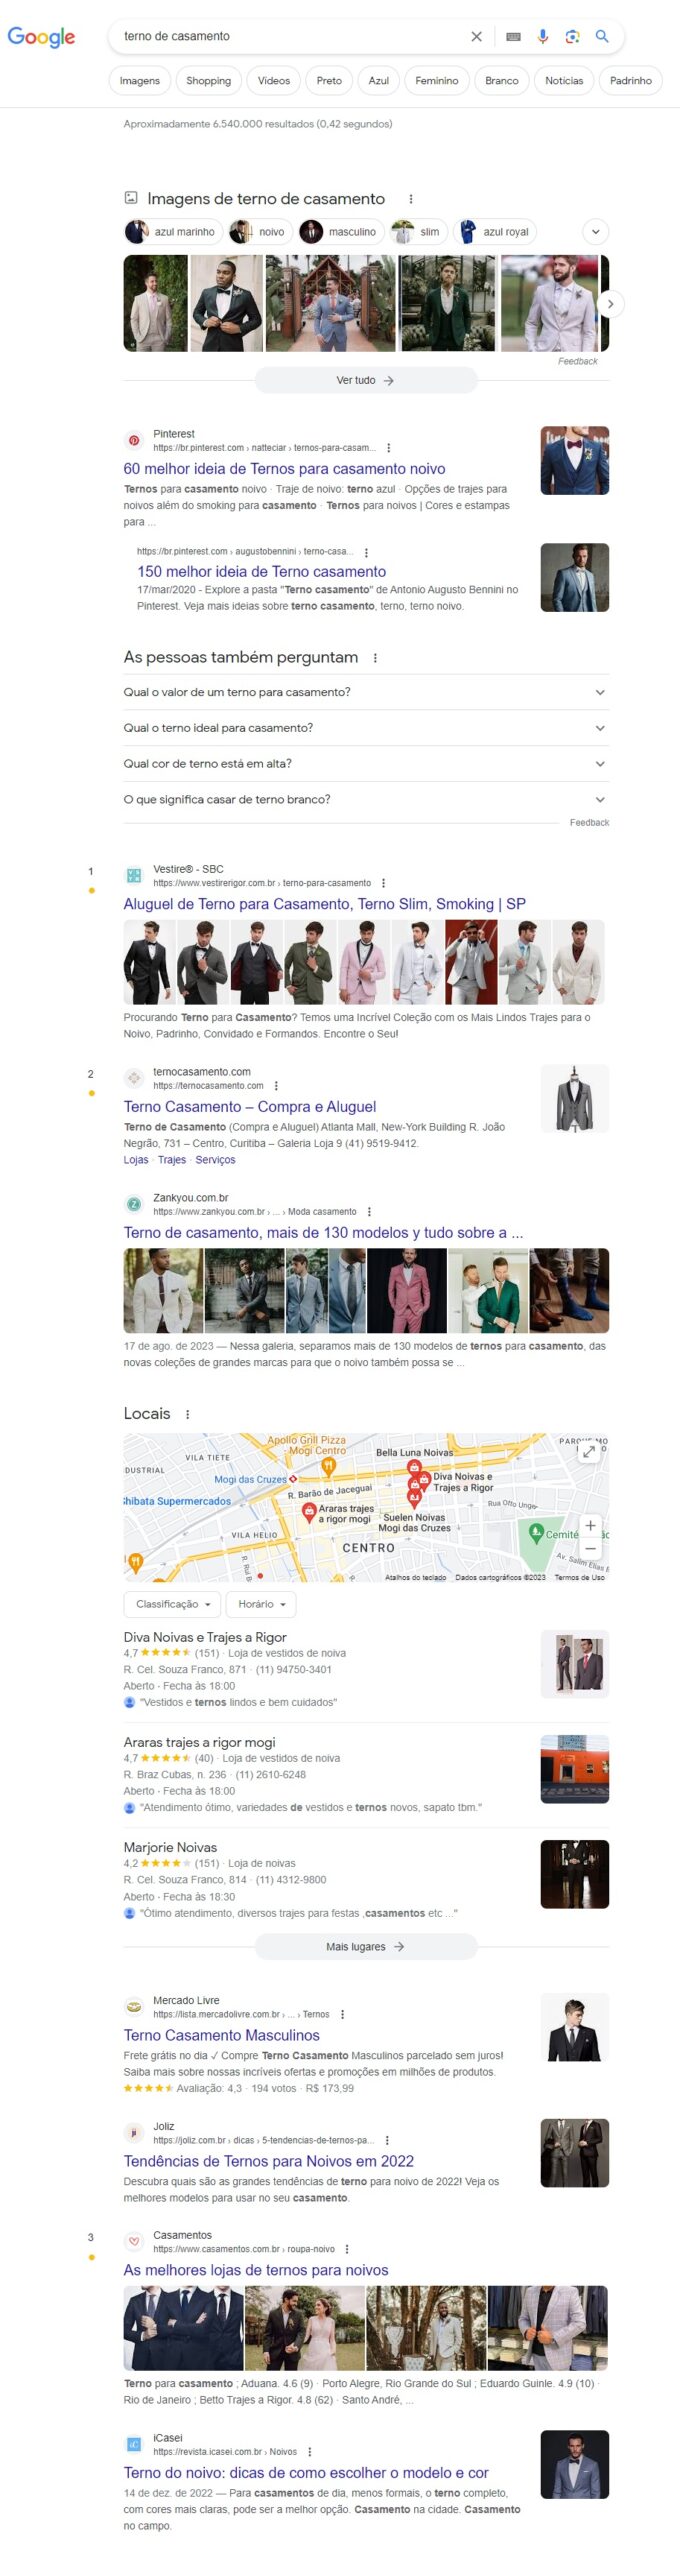 print mostrando intenção de busca mista no google